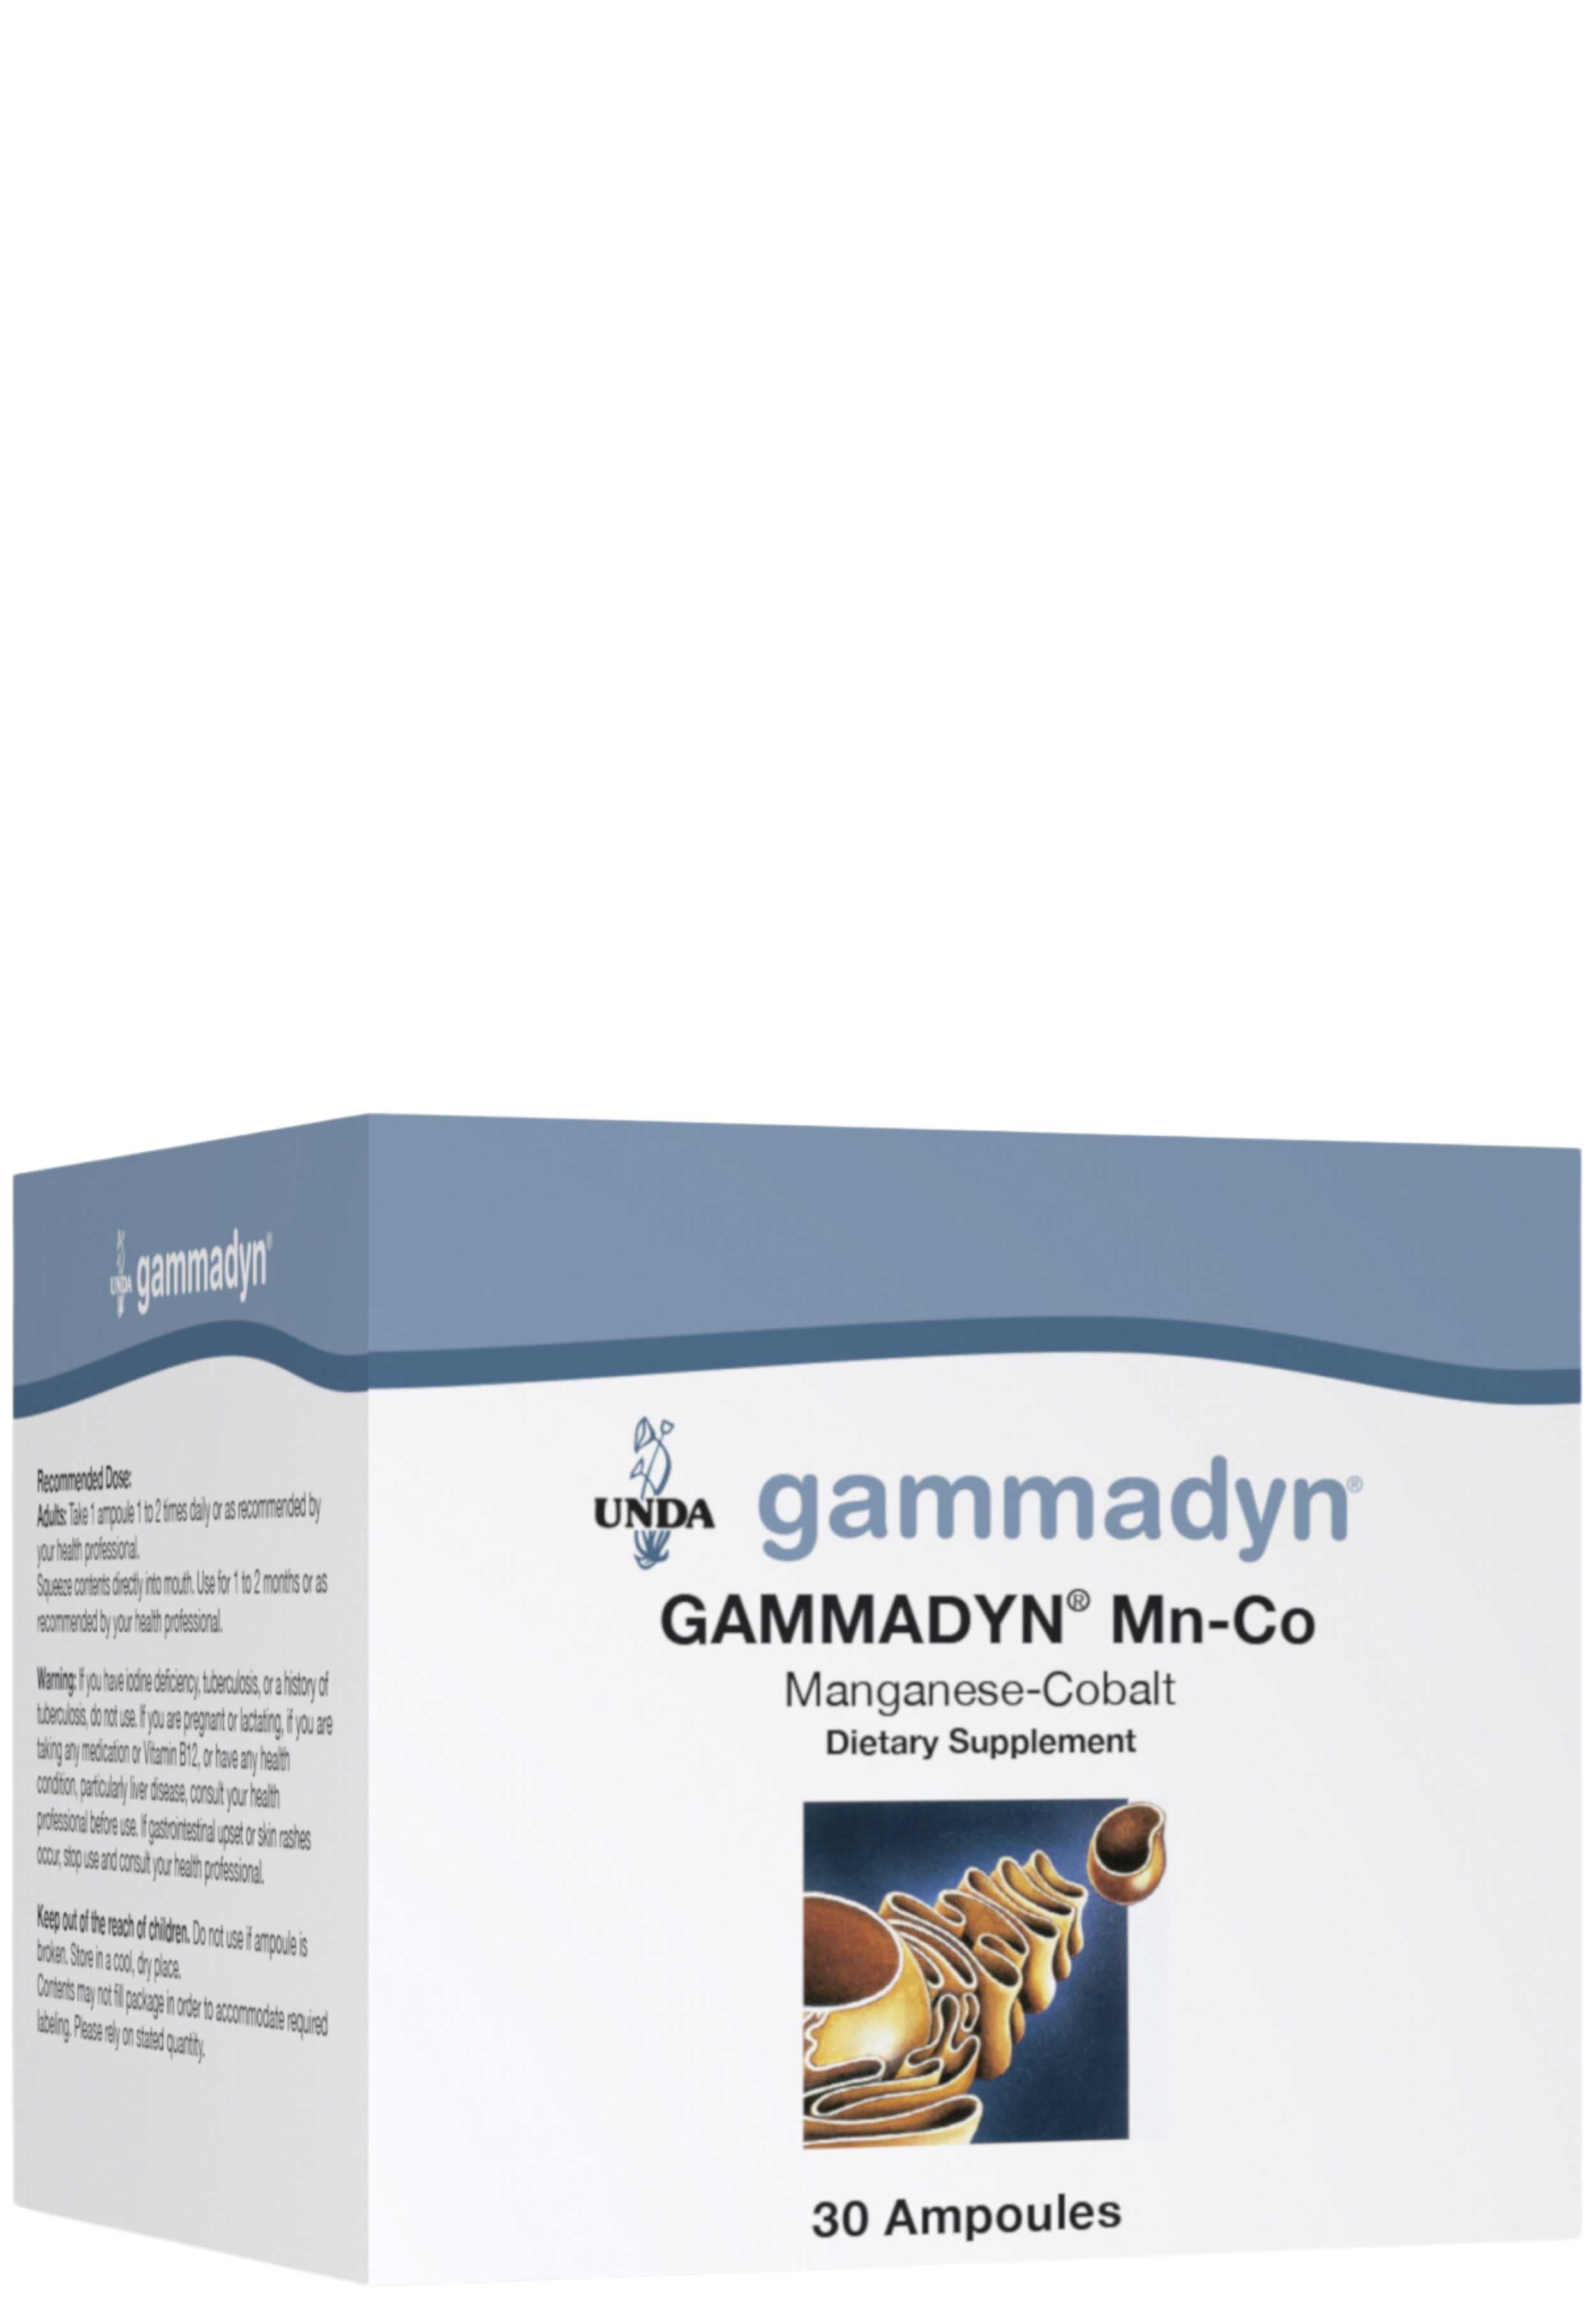 UNDA Gammadyn Mn-Co